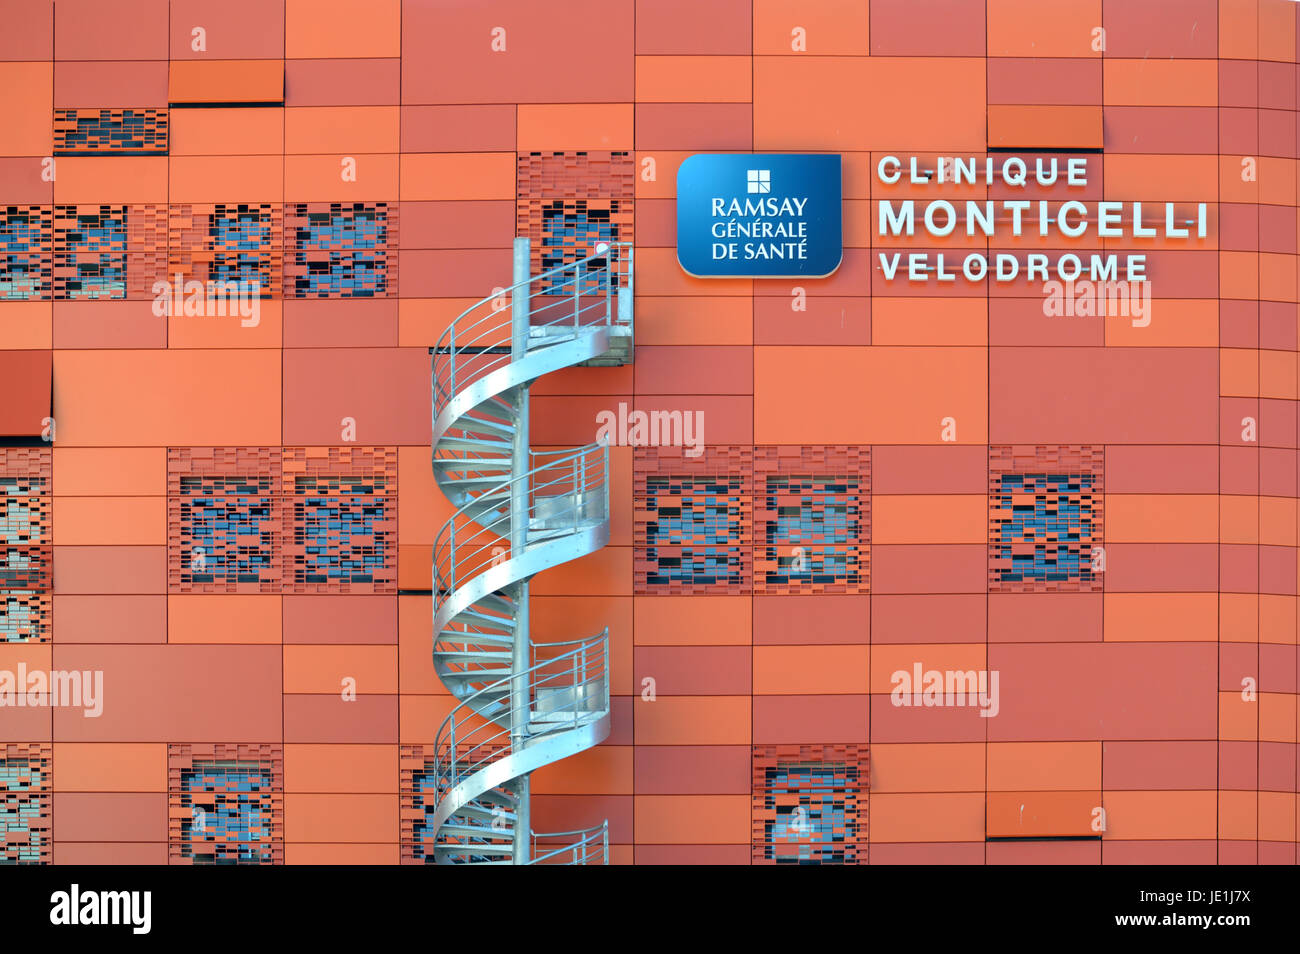 Escalier à vis en aluminium ou un escalier de secours et bardage métallique Orange Monticelli clinique ou hôpital Marseille France Banque D'Images